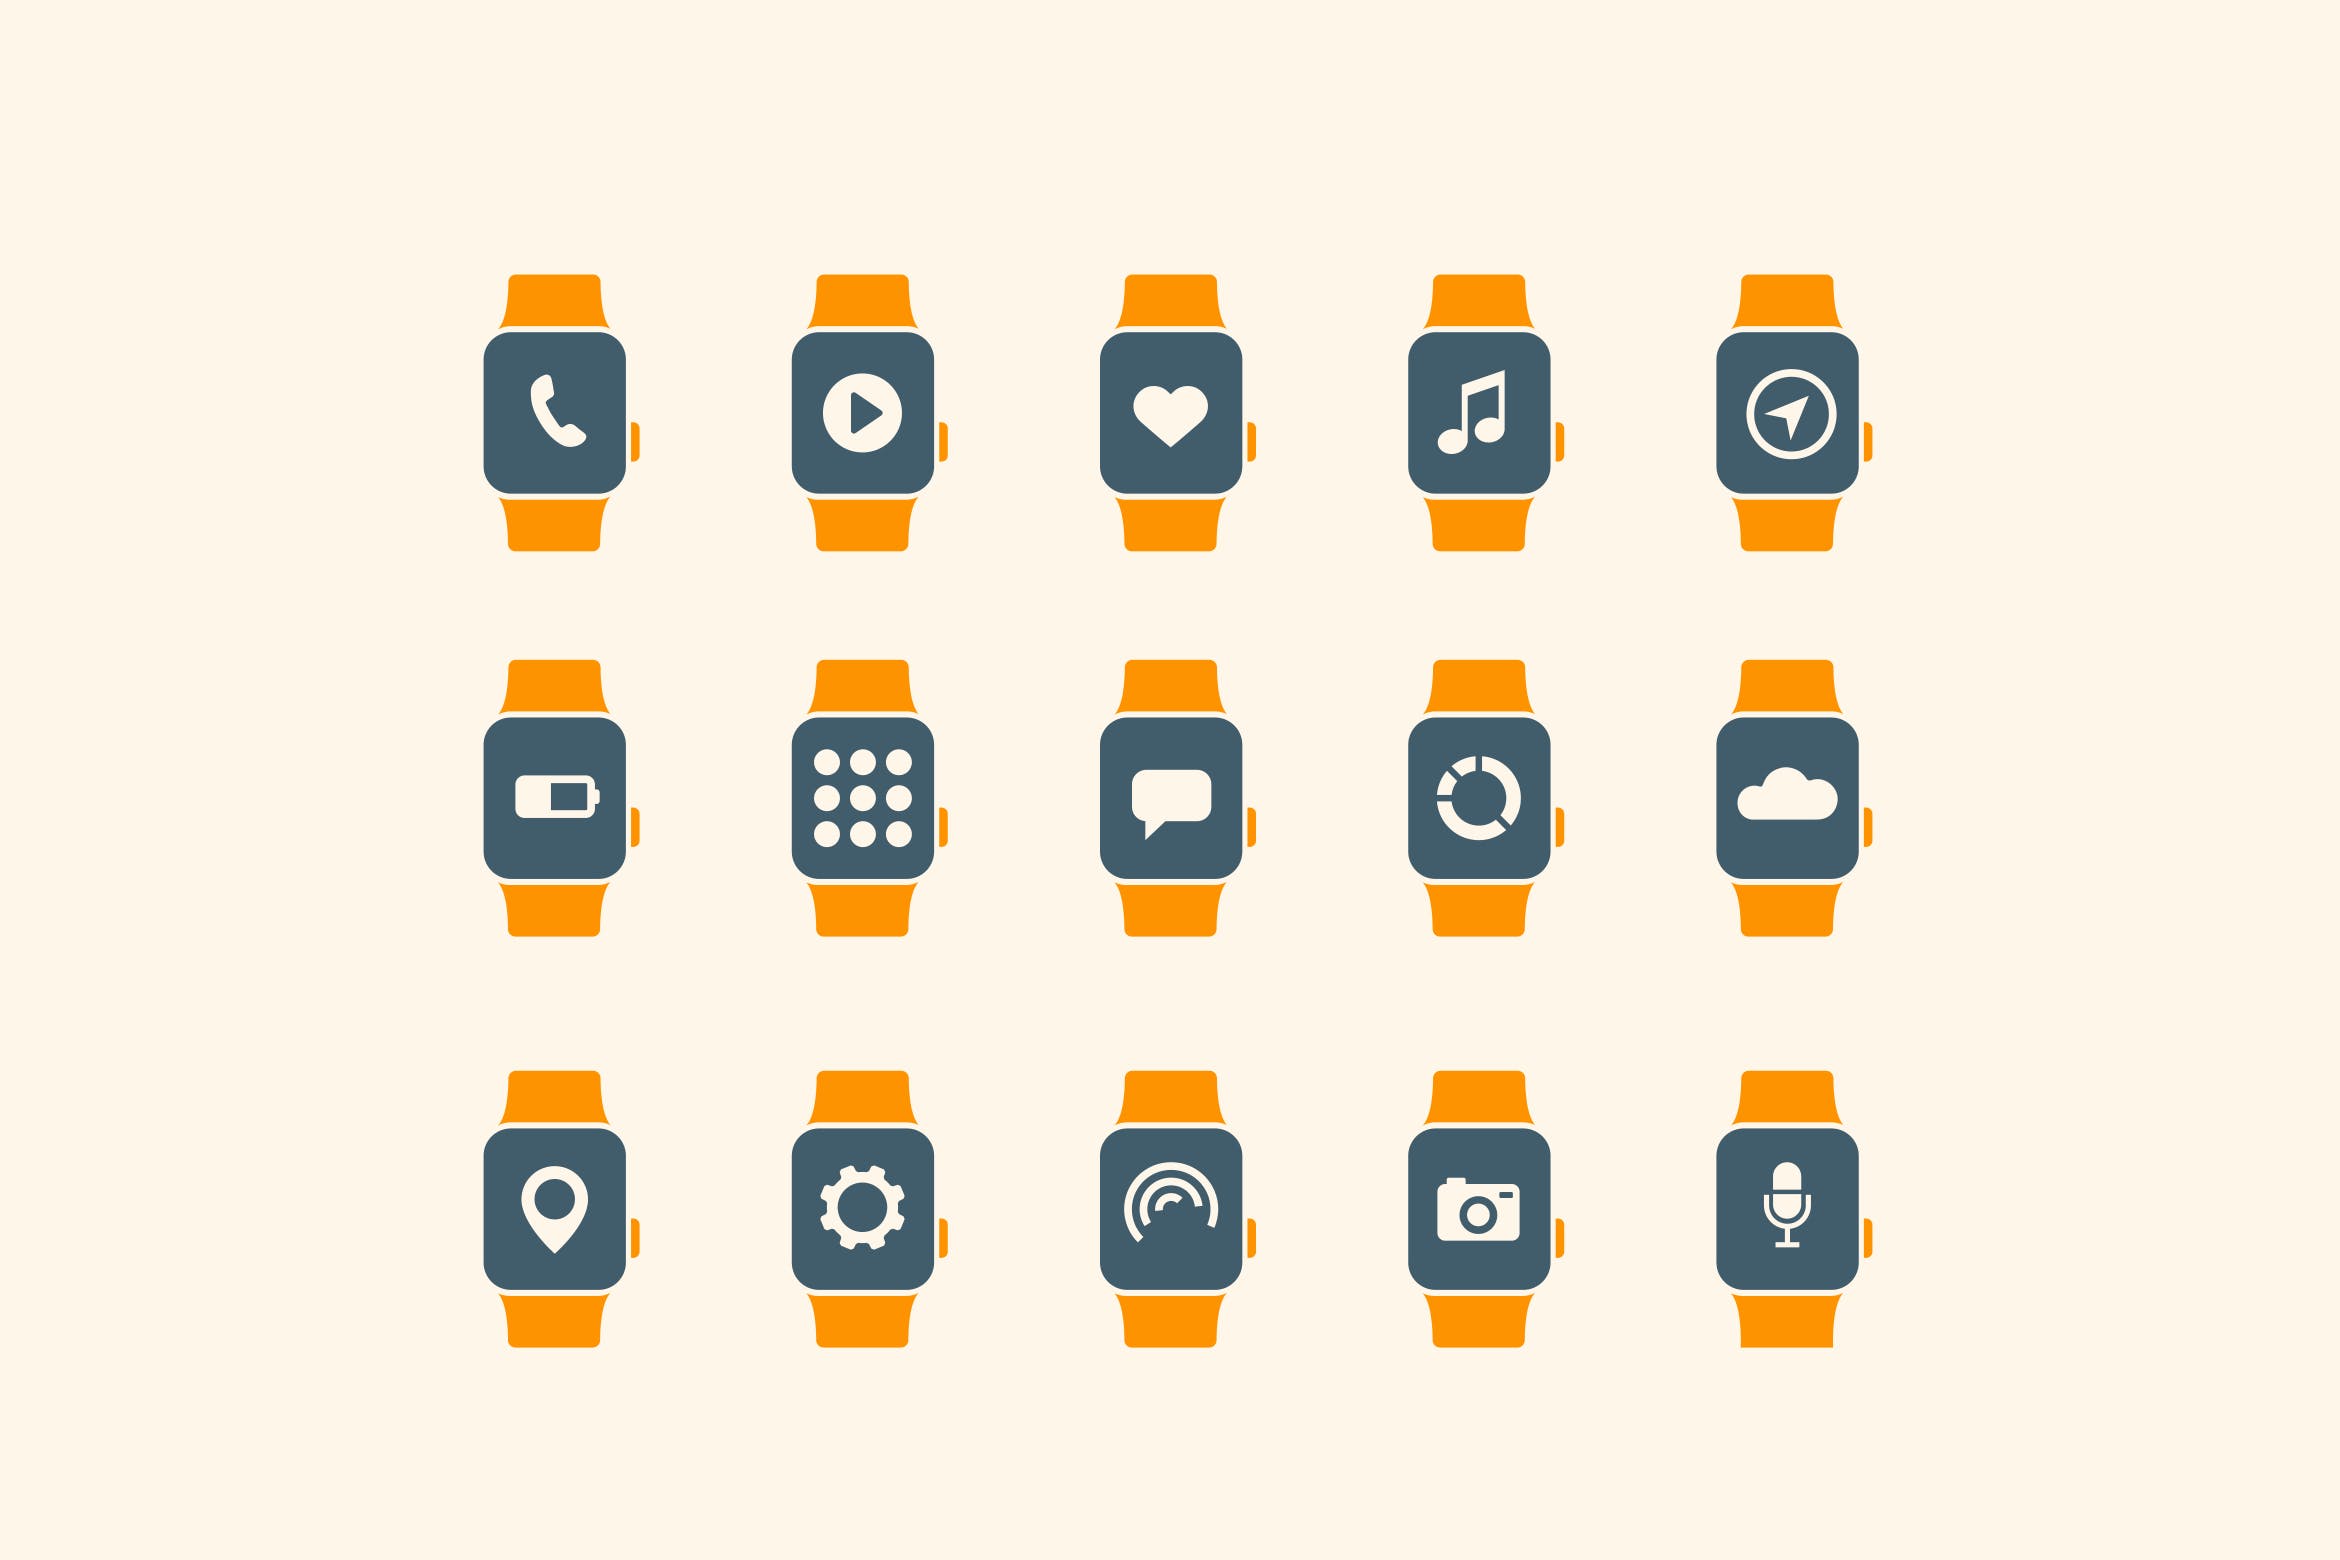 15枚智能手表APP应用主题矢量素材库精选图标 15 Smart Watch App Icons插图